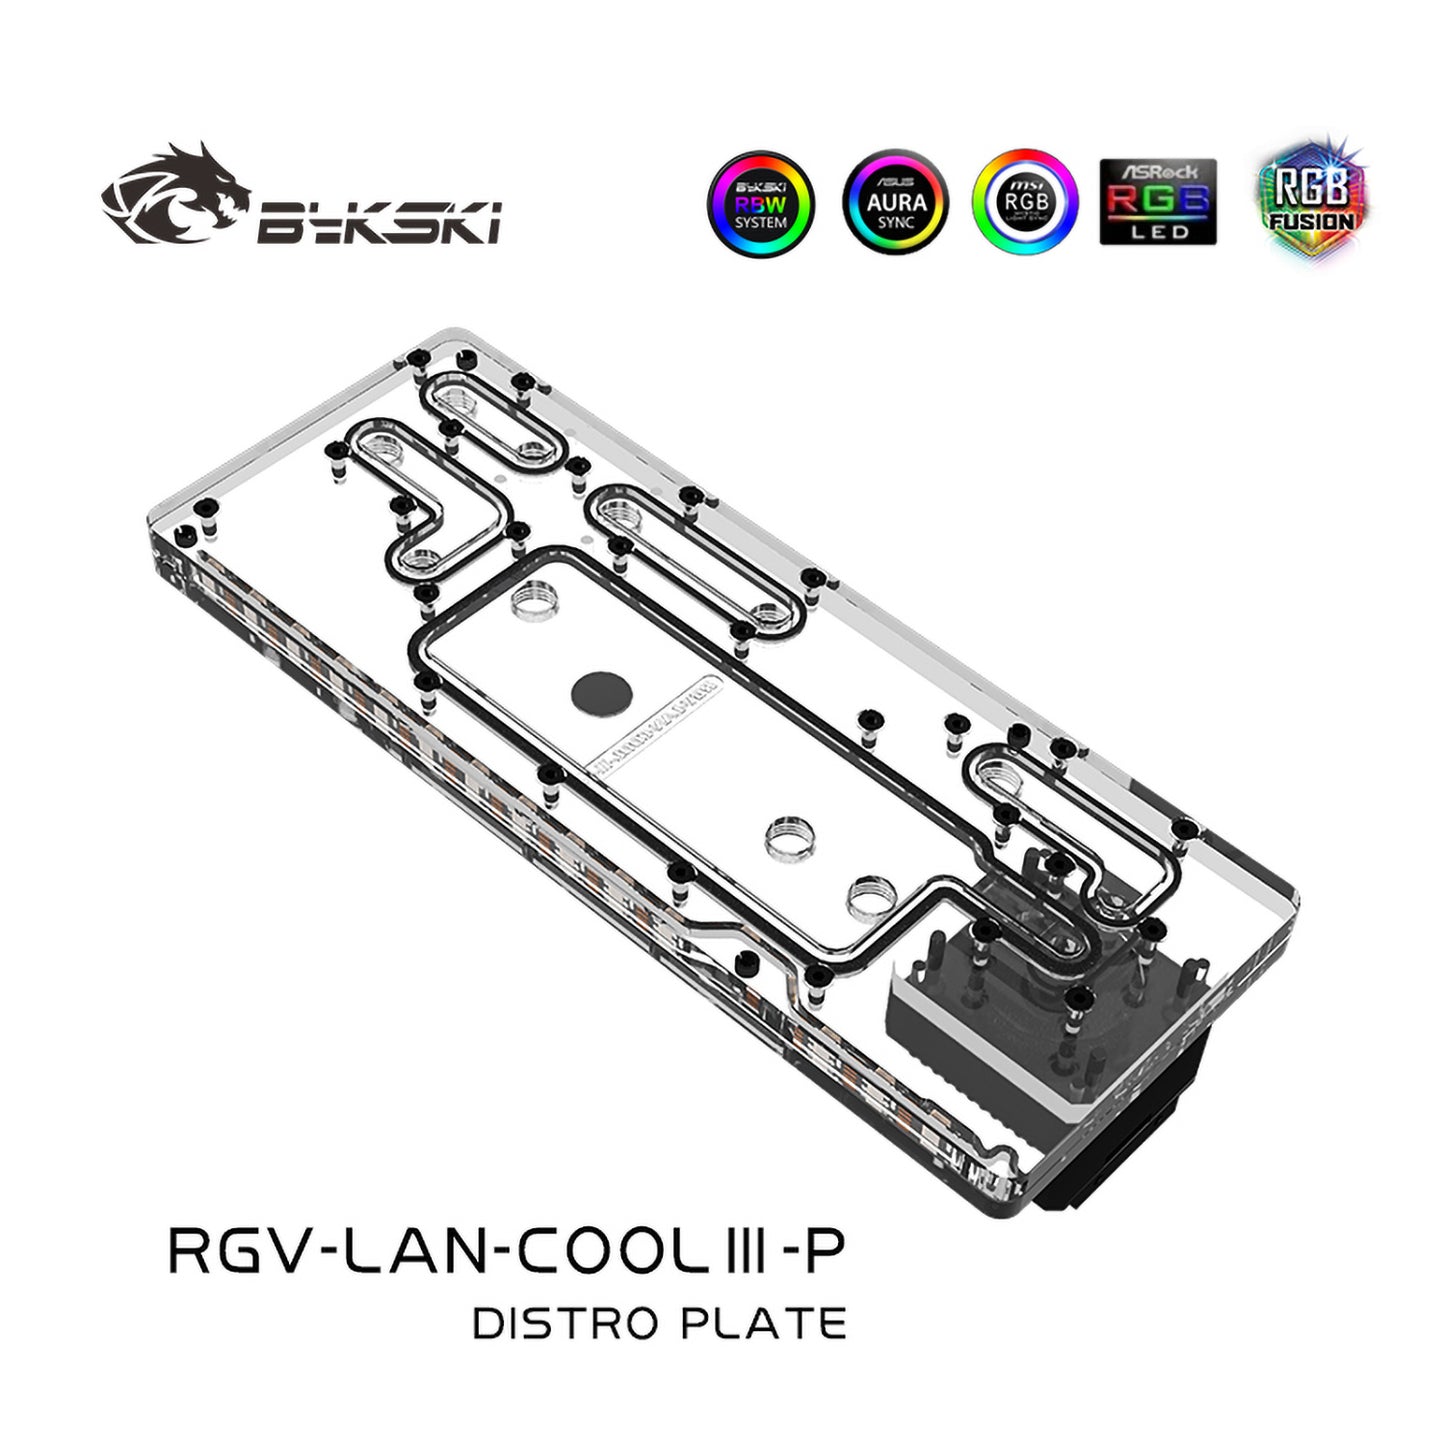 Plaque de distribution Bykski pour boîtier Lian Li Cool III, pompe DDC combinée de carte de voie navigable acrylique, 5 V A-RGB, RGV-LAN-COOLIII-P 